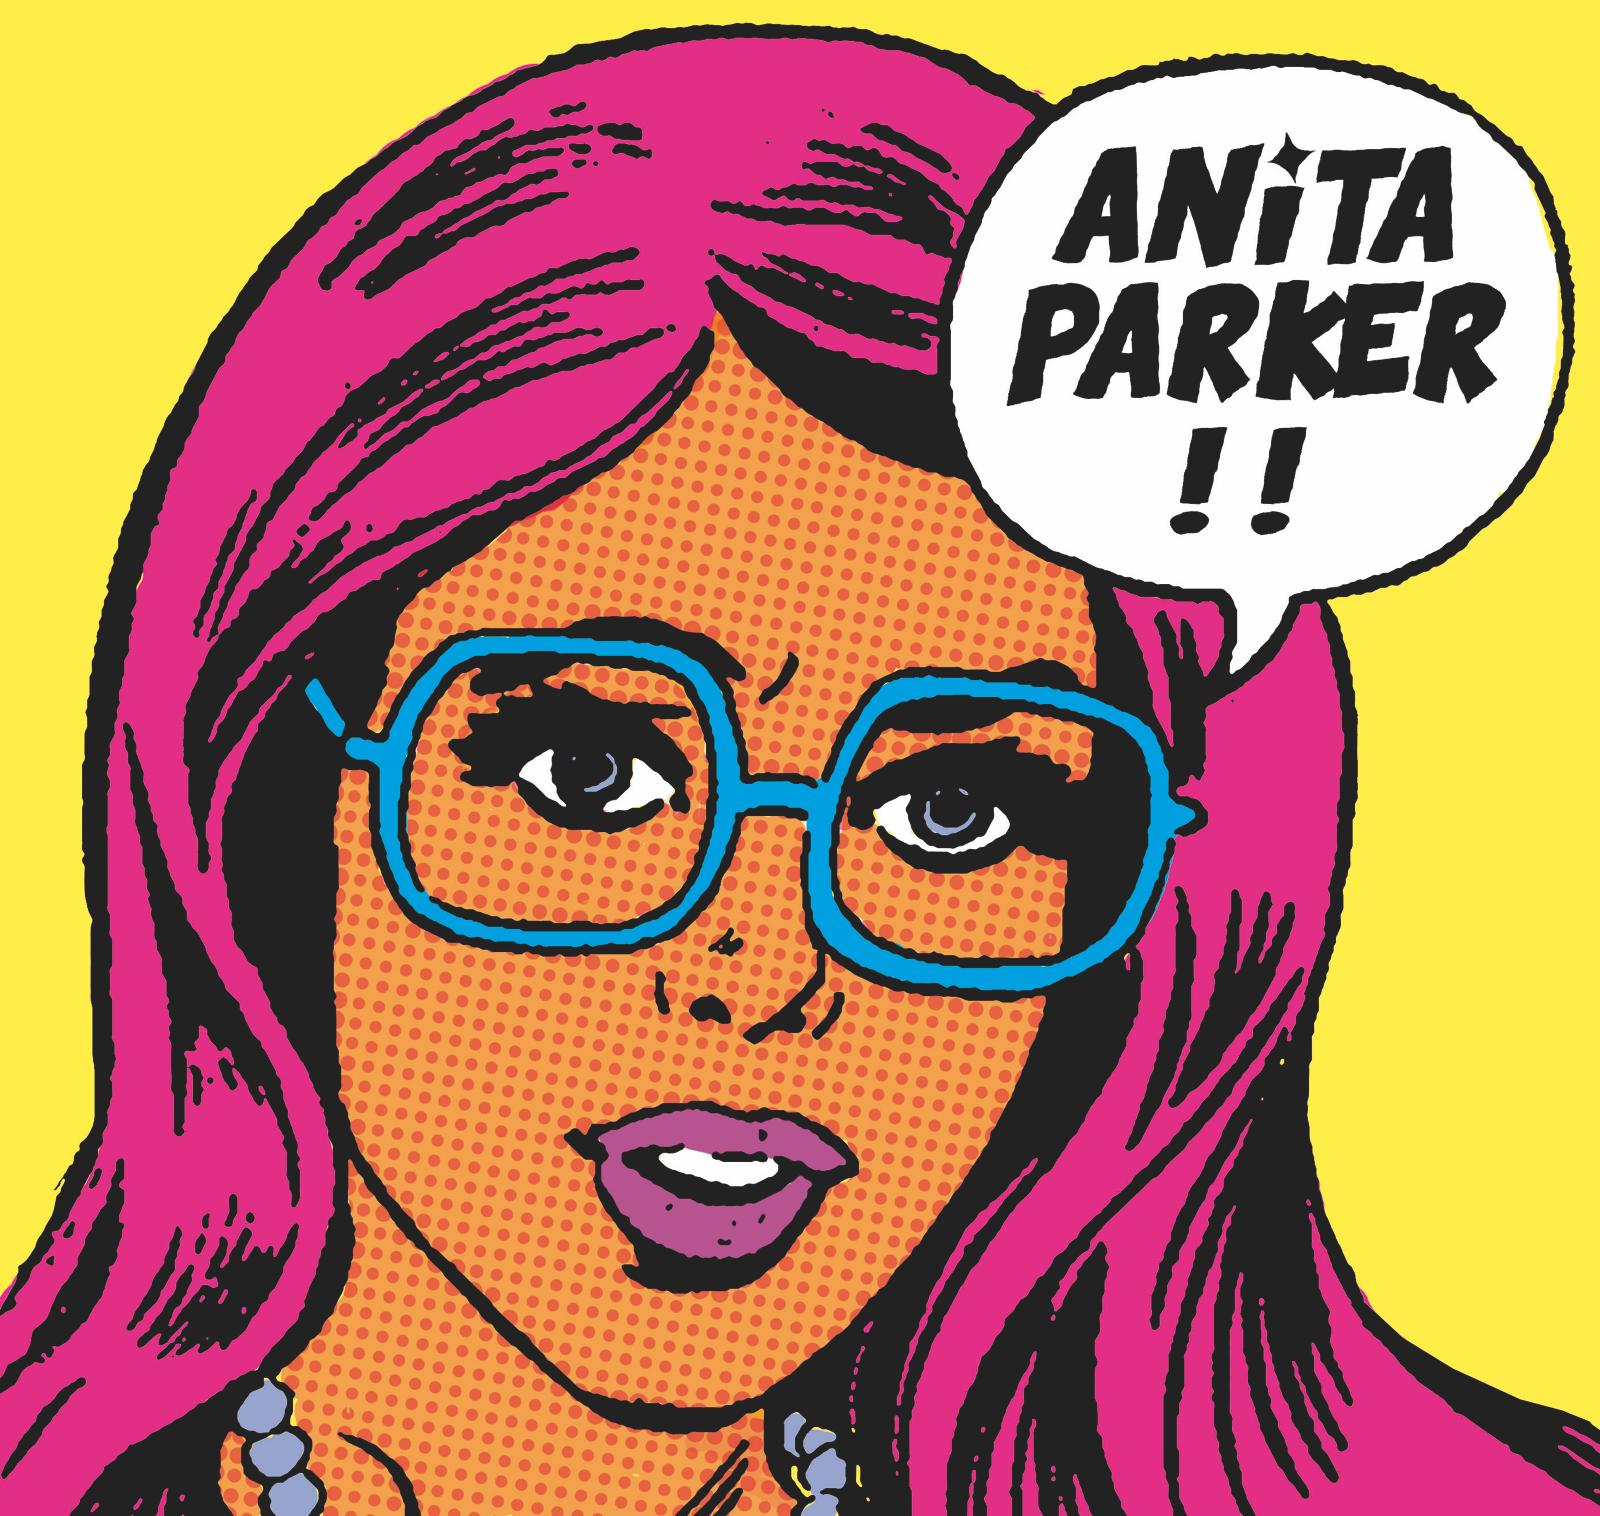 Anita Parker!!